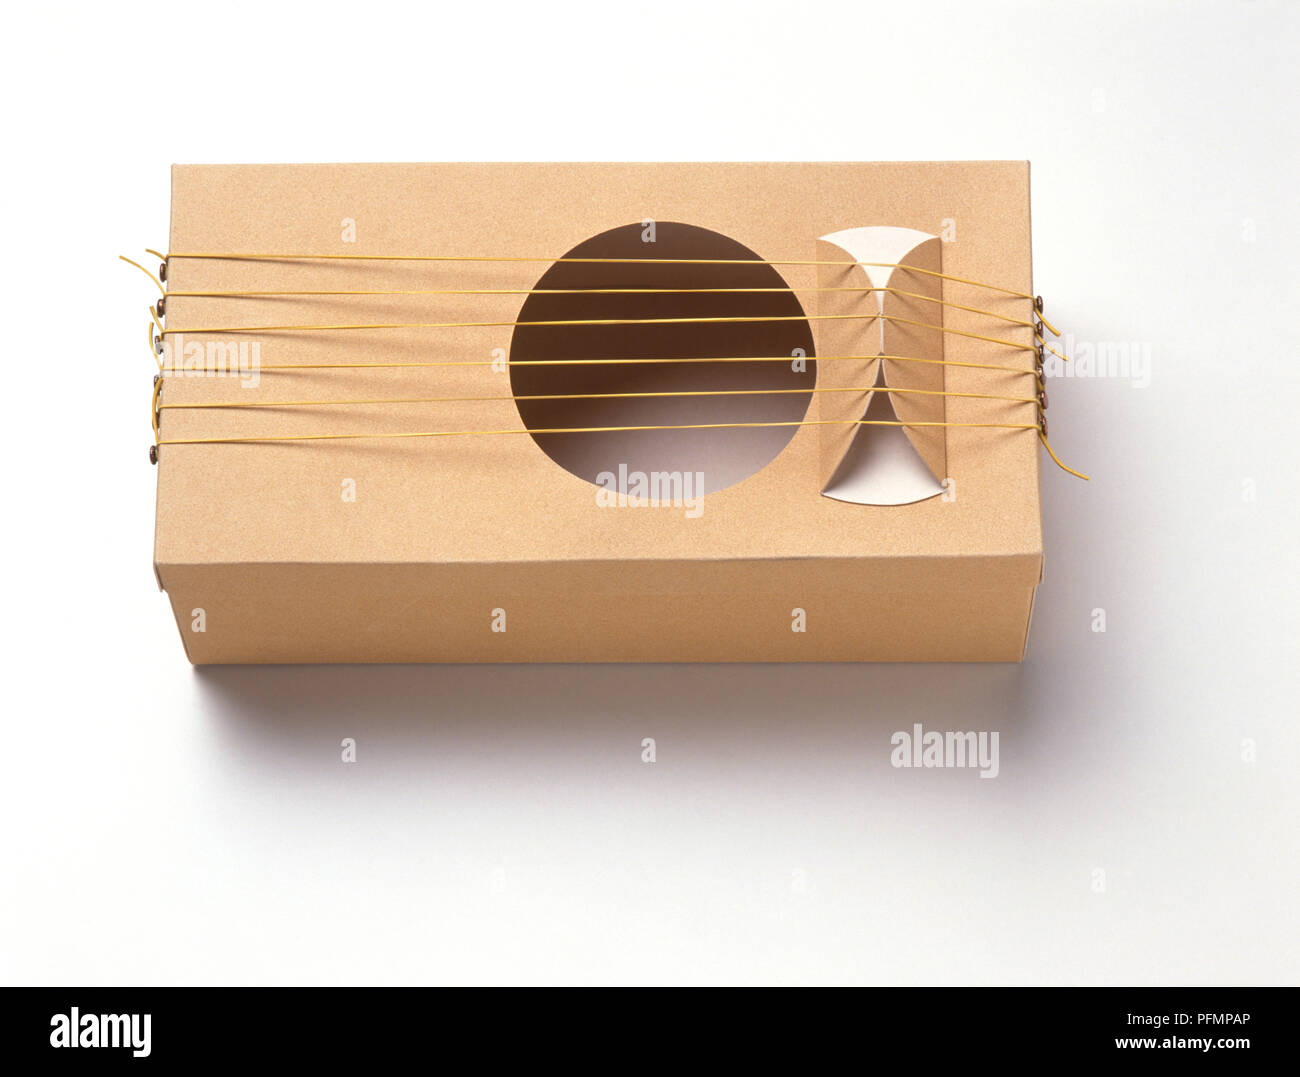 Gitarre aus einem Karton Schuhkarton mit elastischen Bändern wie Streicher,  Nahaufnahme, Ansicht von oben Stockfotografie - Alamy